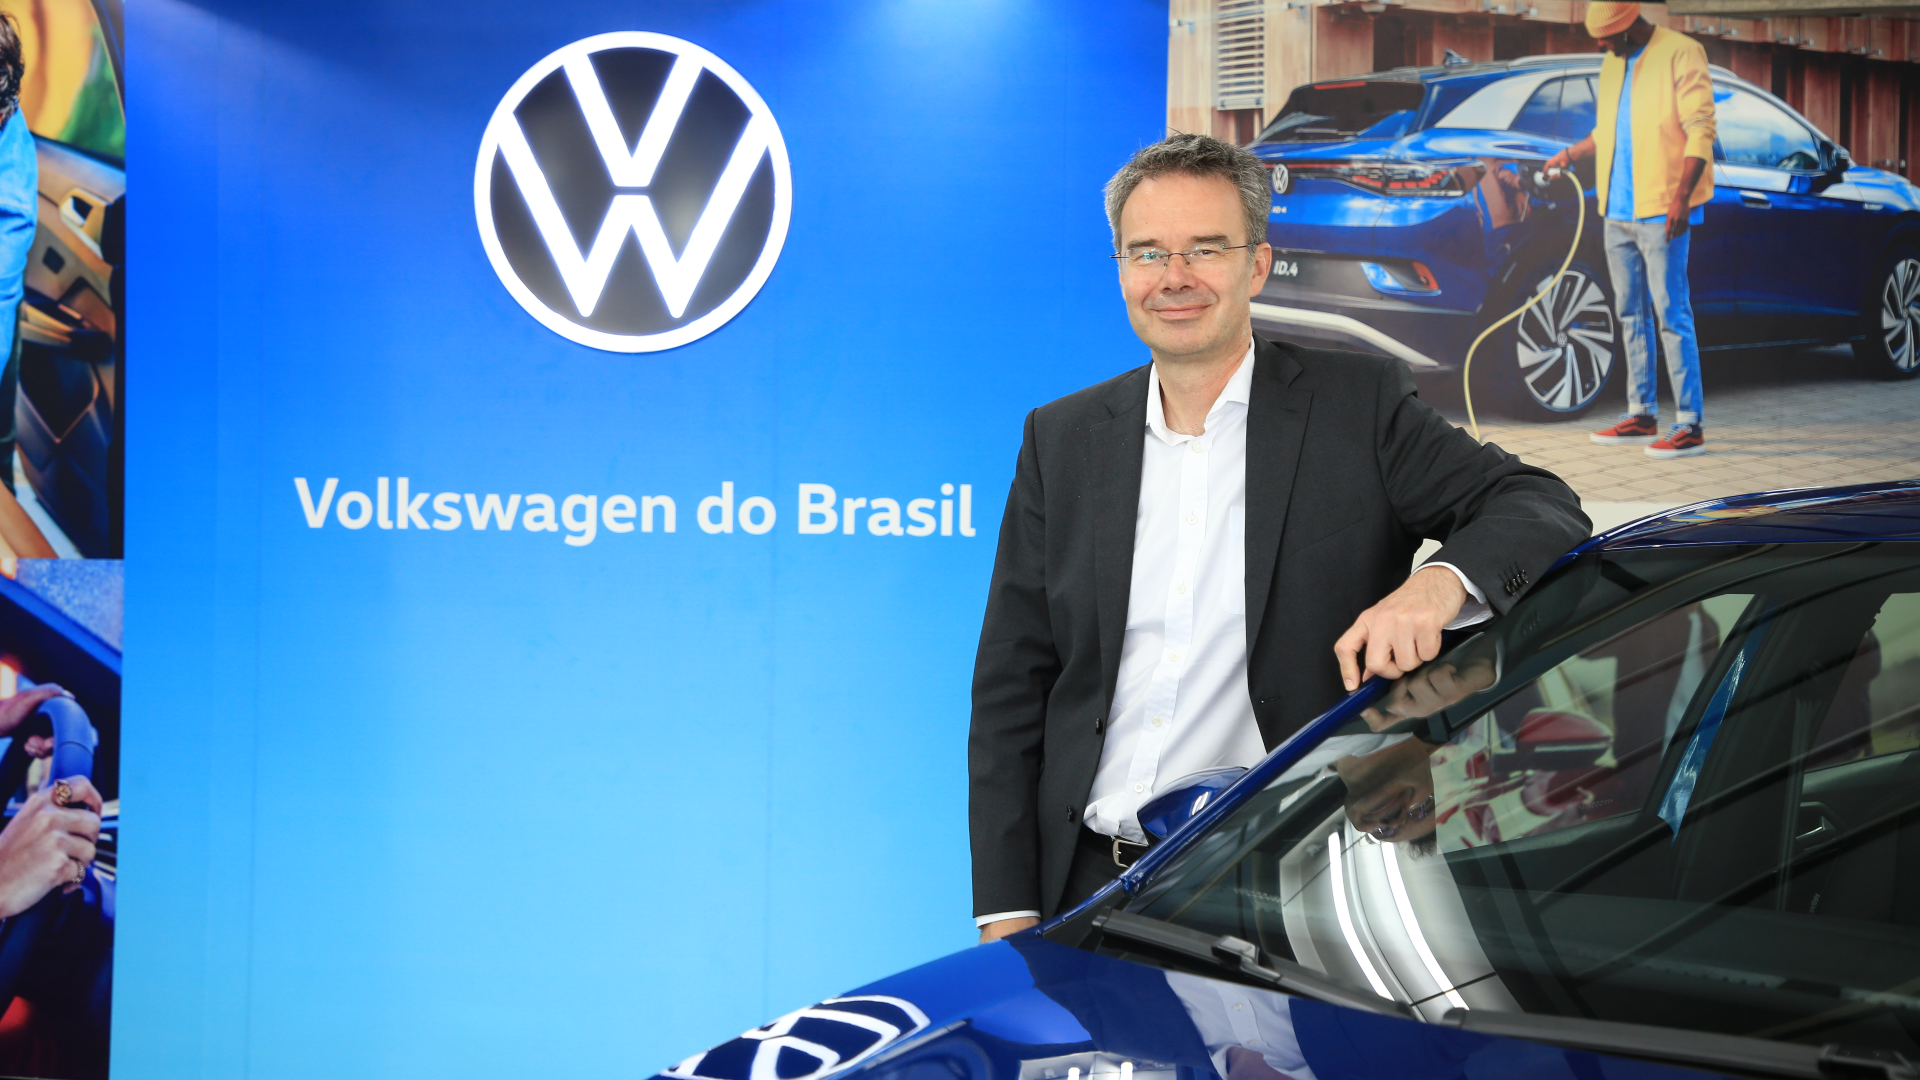 Markus Kleimann assume novo cargo na VW